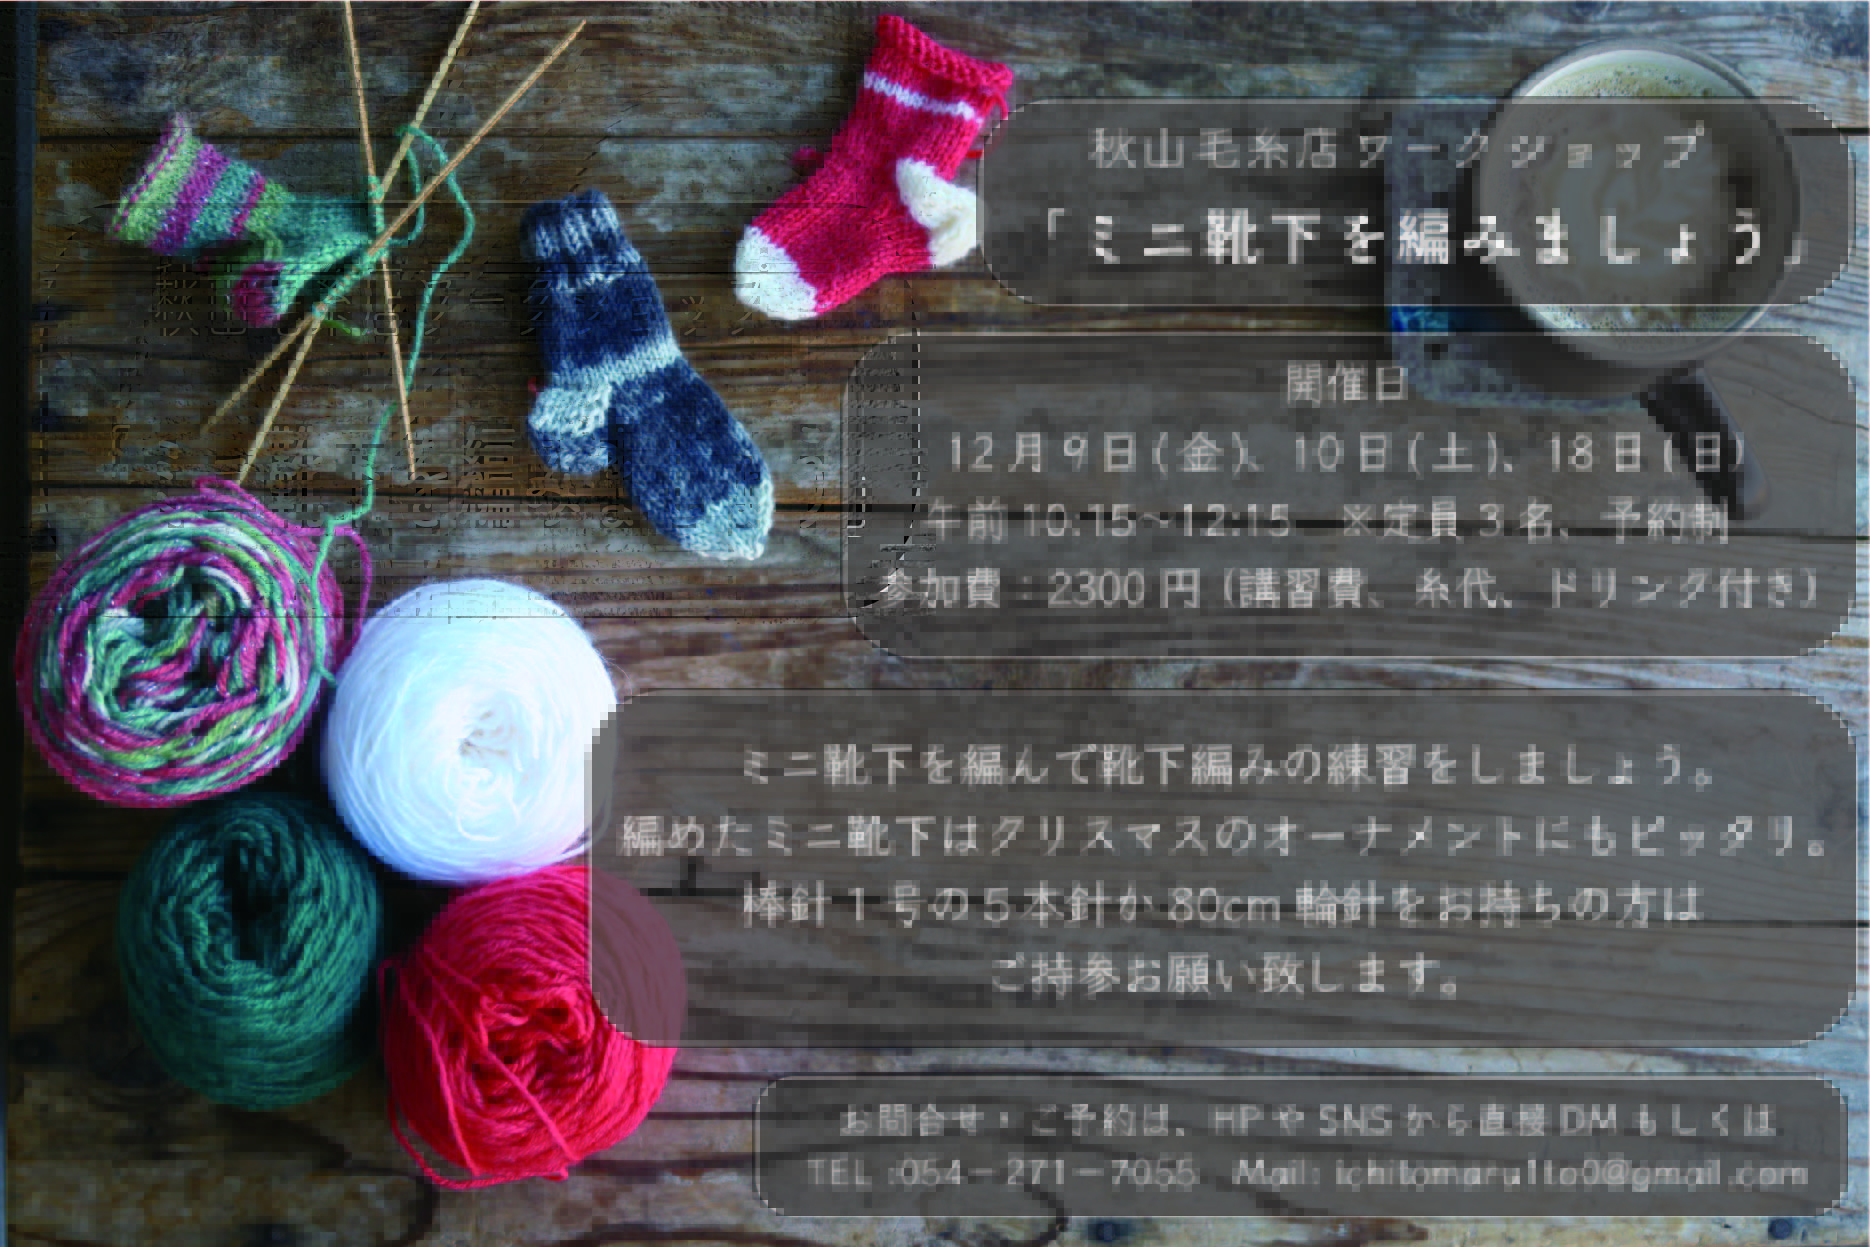 WS終了。秋山毛糸店ワークショップ「ミニ靴下編みましょう」